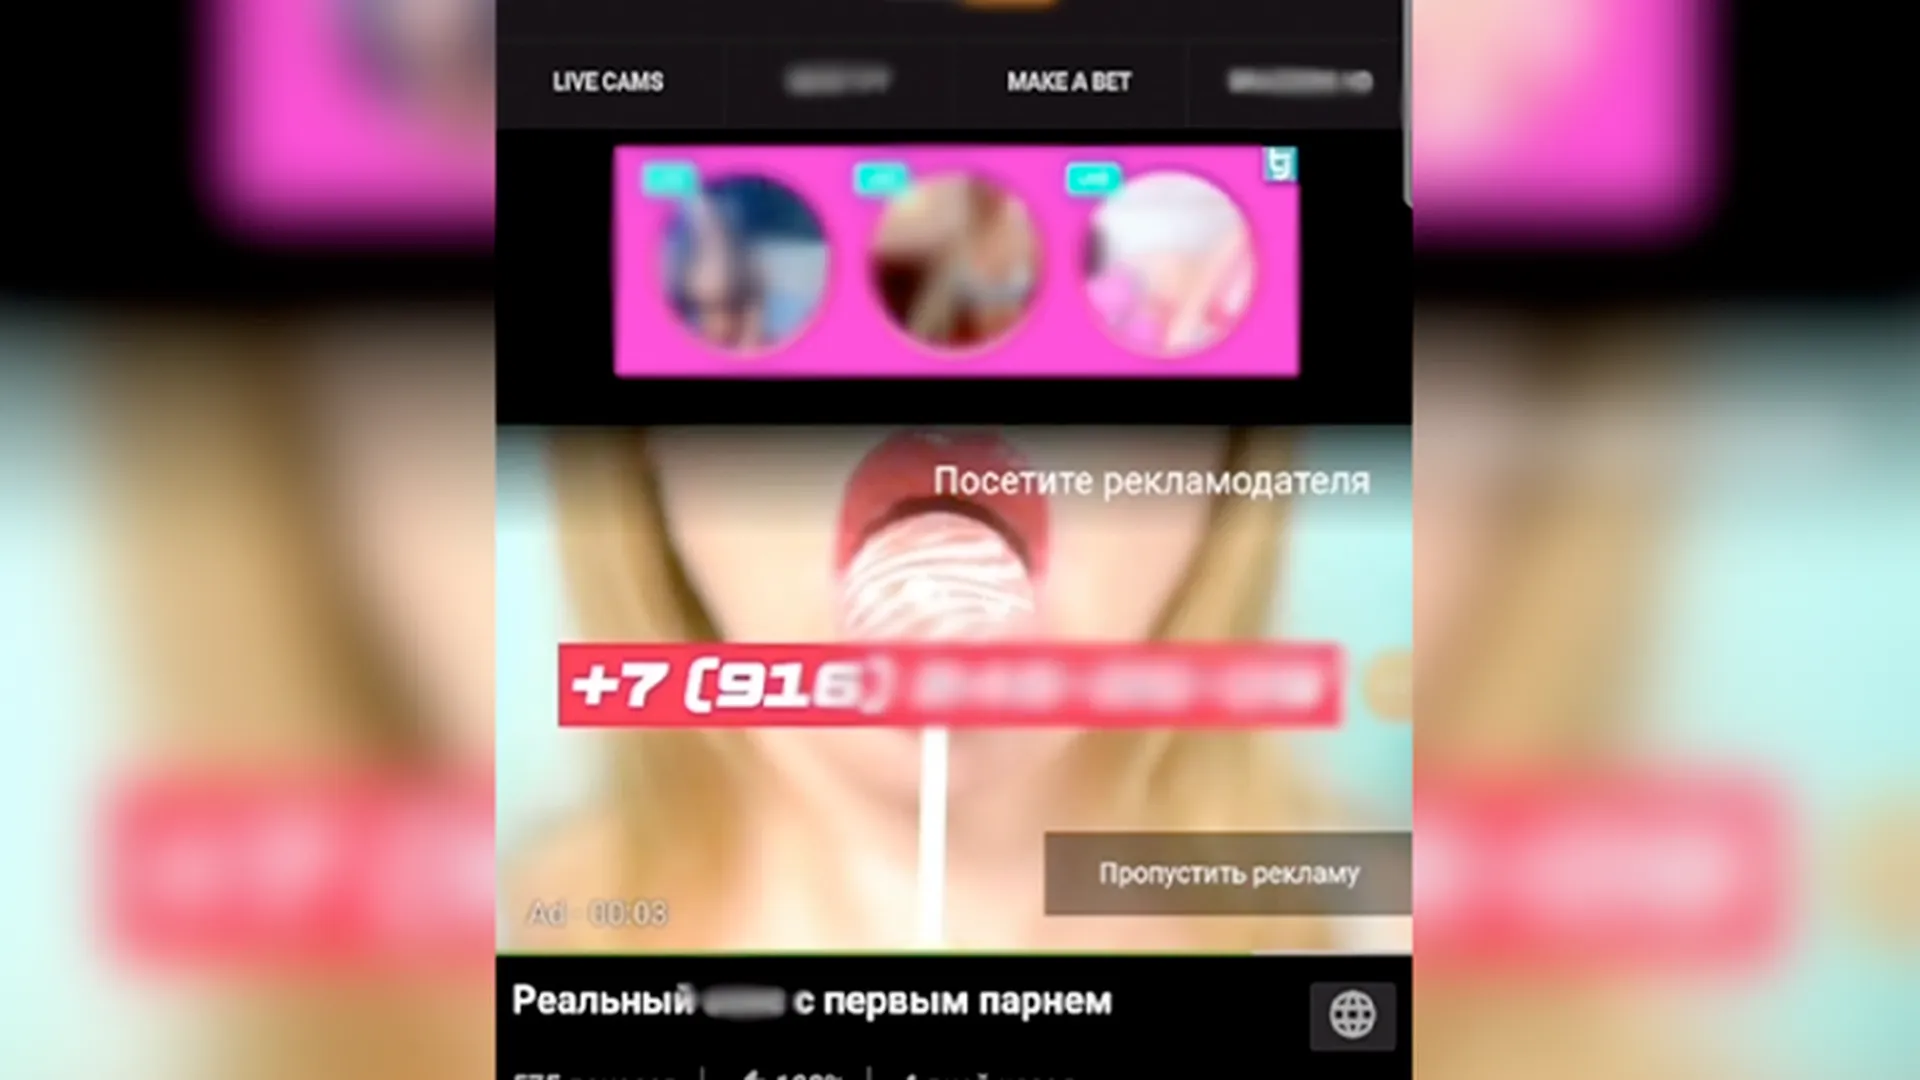 «Особенно чупа-чупс понравился»: необычная реклама ЧВК «Вагнер» появилась на Pornhub